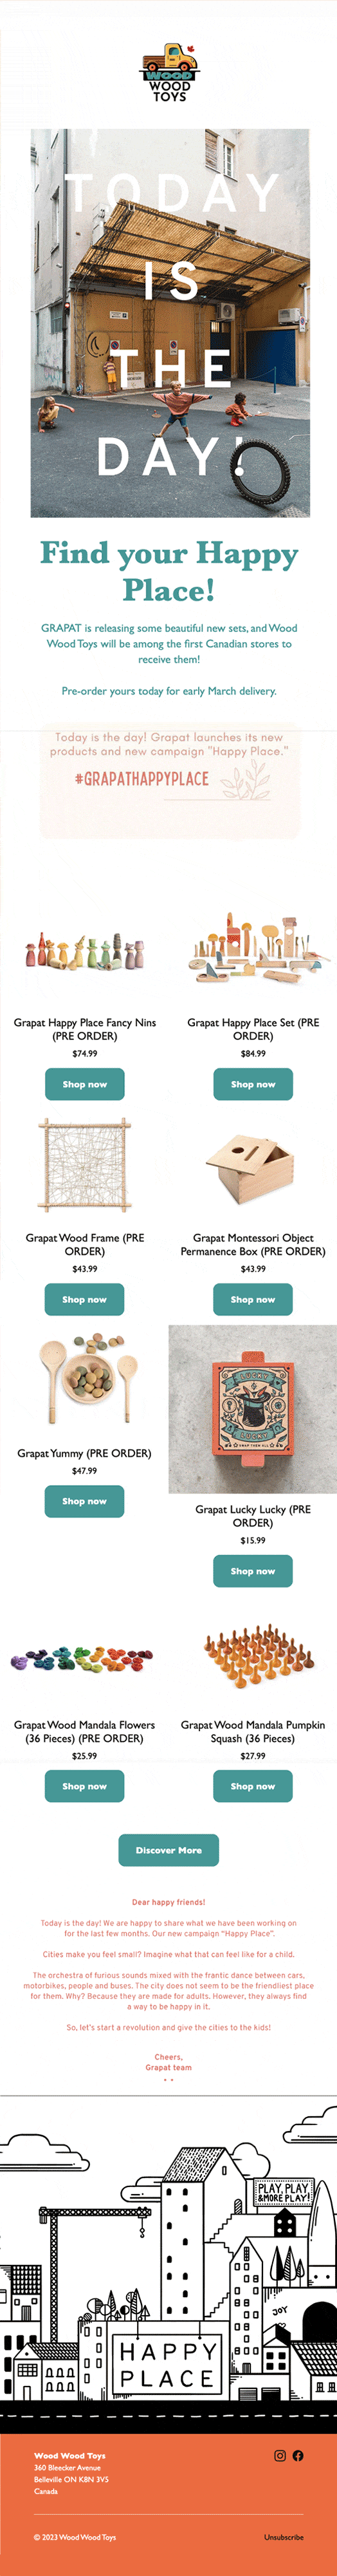 Một email giới thiệu các sản phẩm đồ chơi gỗ tuyệt đẹp mới về trên cửa hàng trực tuyến của Wood Wood Toys.